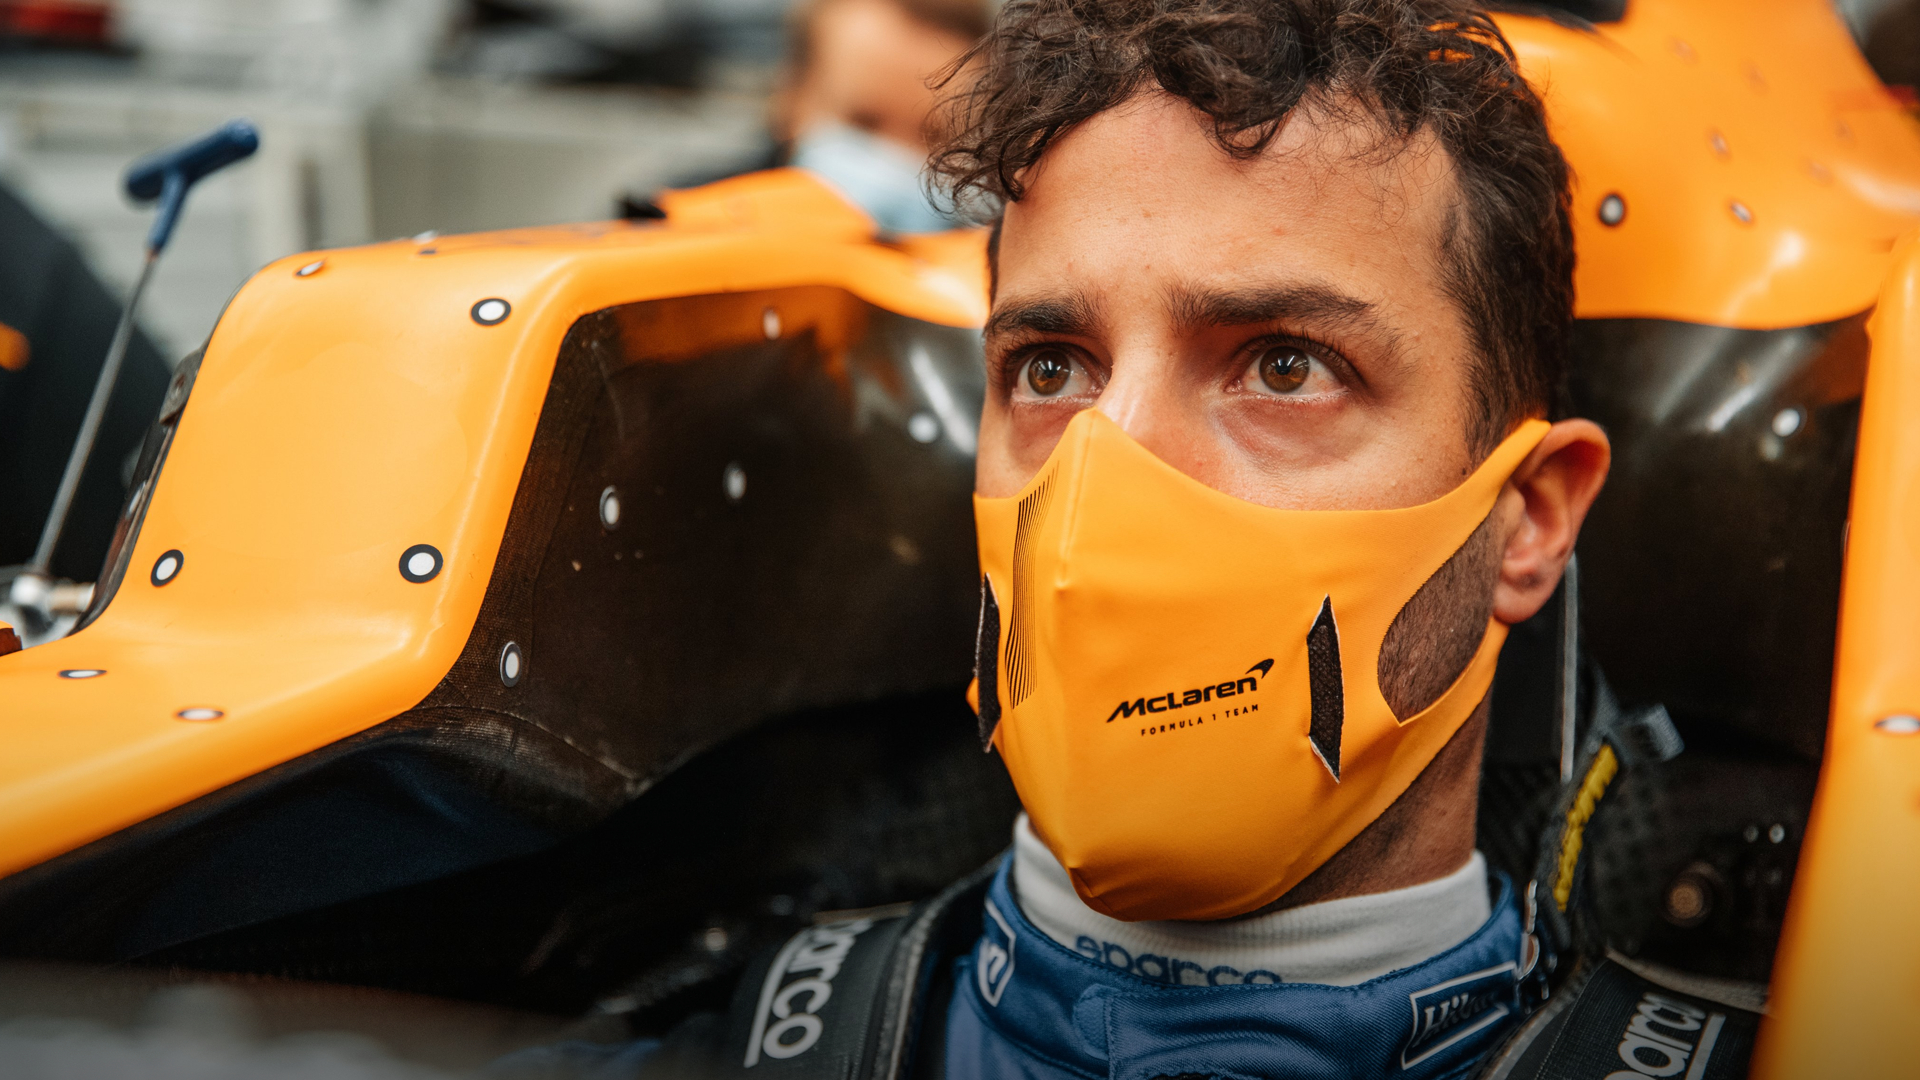 Make-or-break moment for Daniel Ricciardo and his McLaren ambitions in F1 triple-header